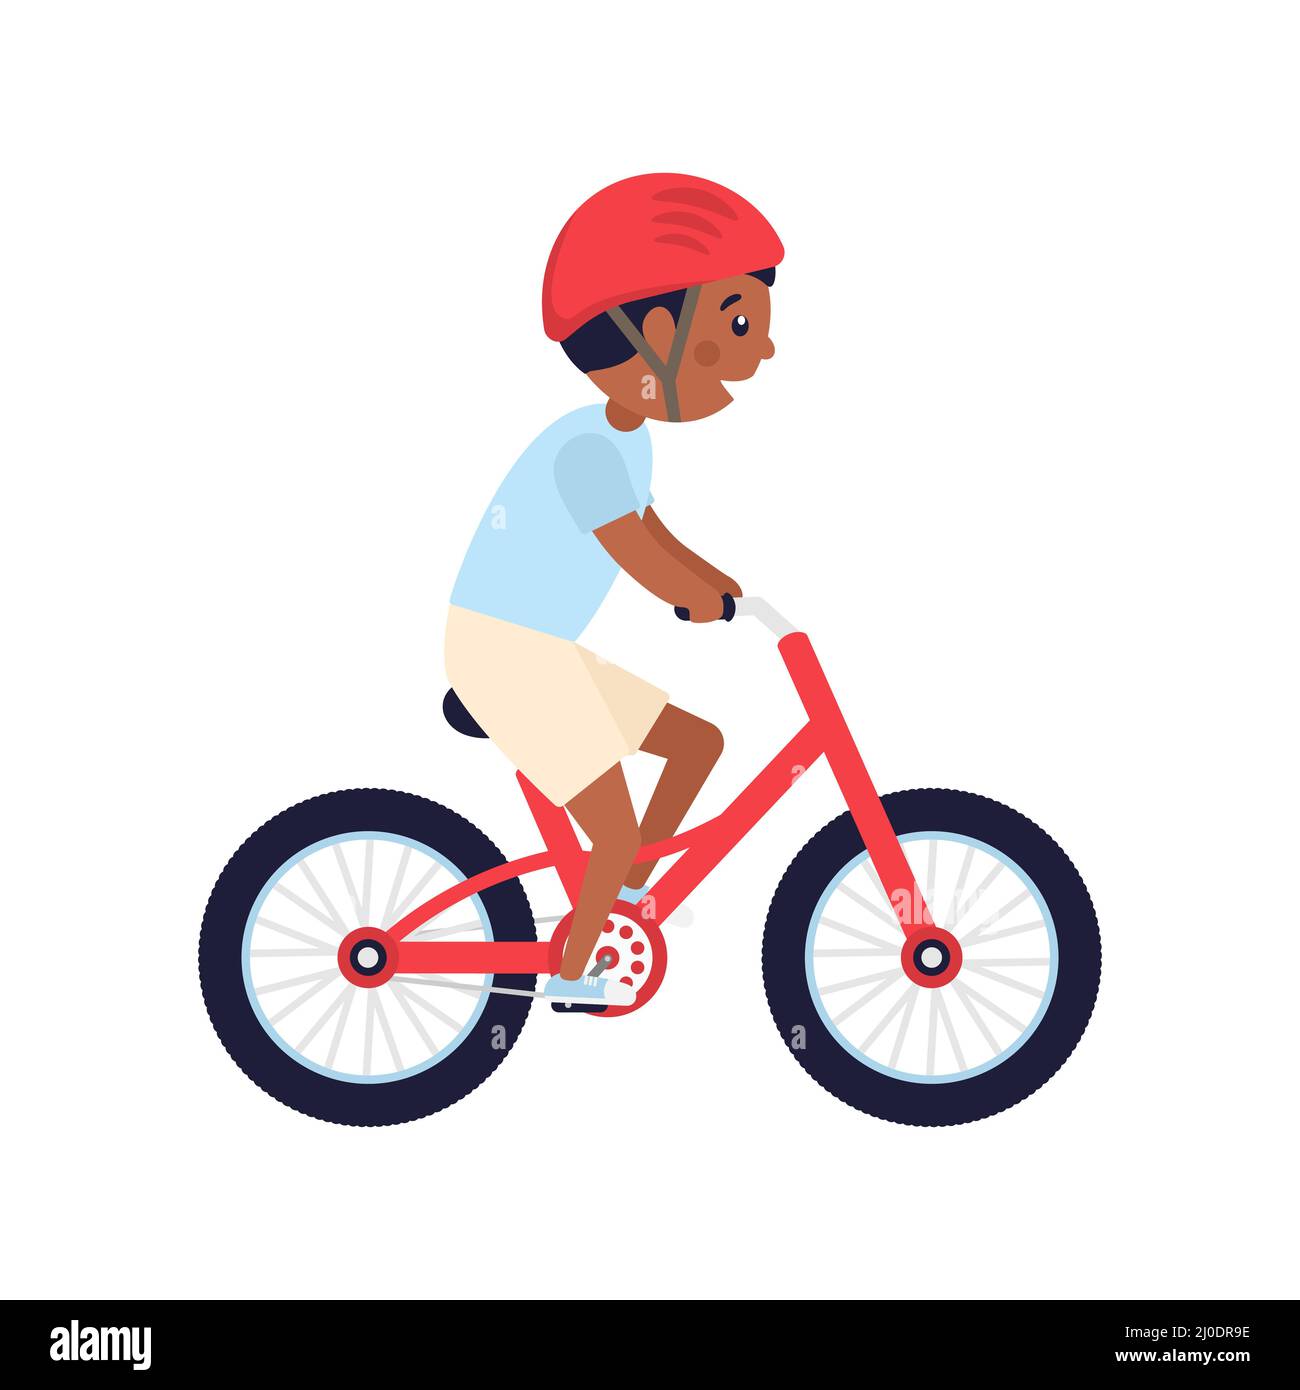 Netter glücklicher amerikanischer Junge mit rotem Helm Fahrrad fahren. Afrikanisches Kind fährt rotes modernes Fahrrad. Stock Vektor